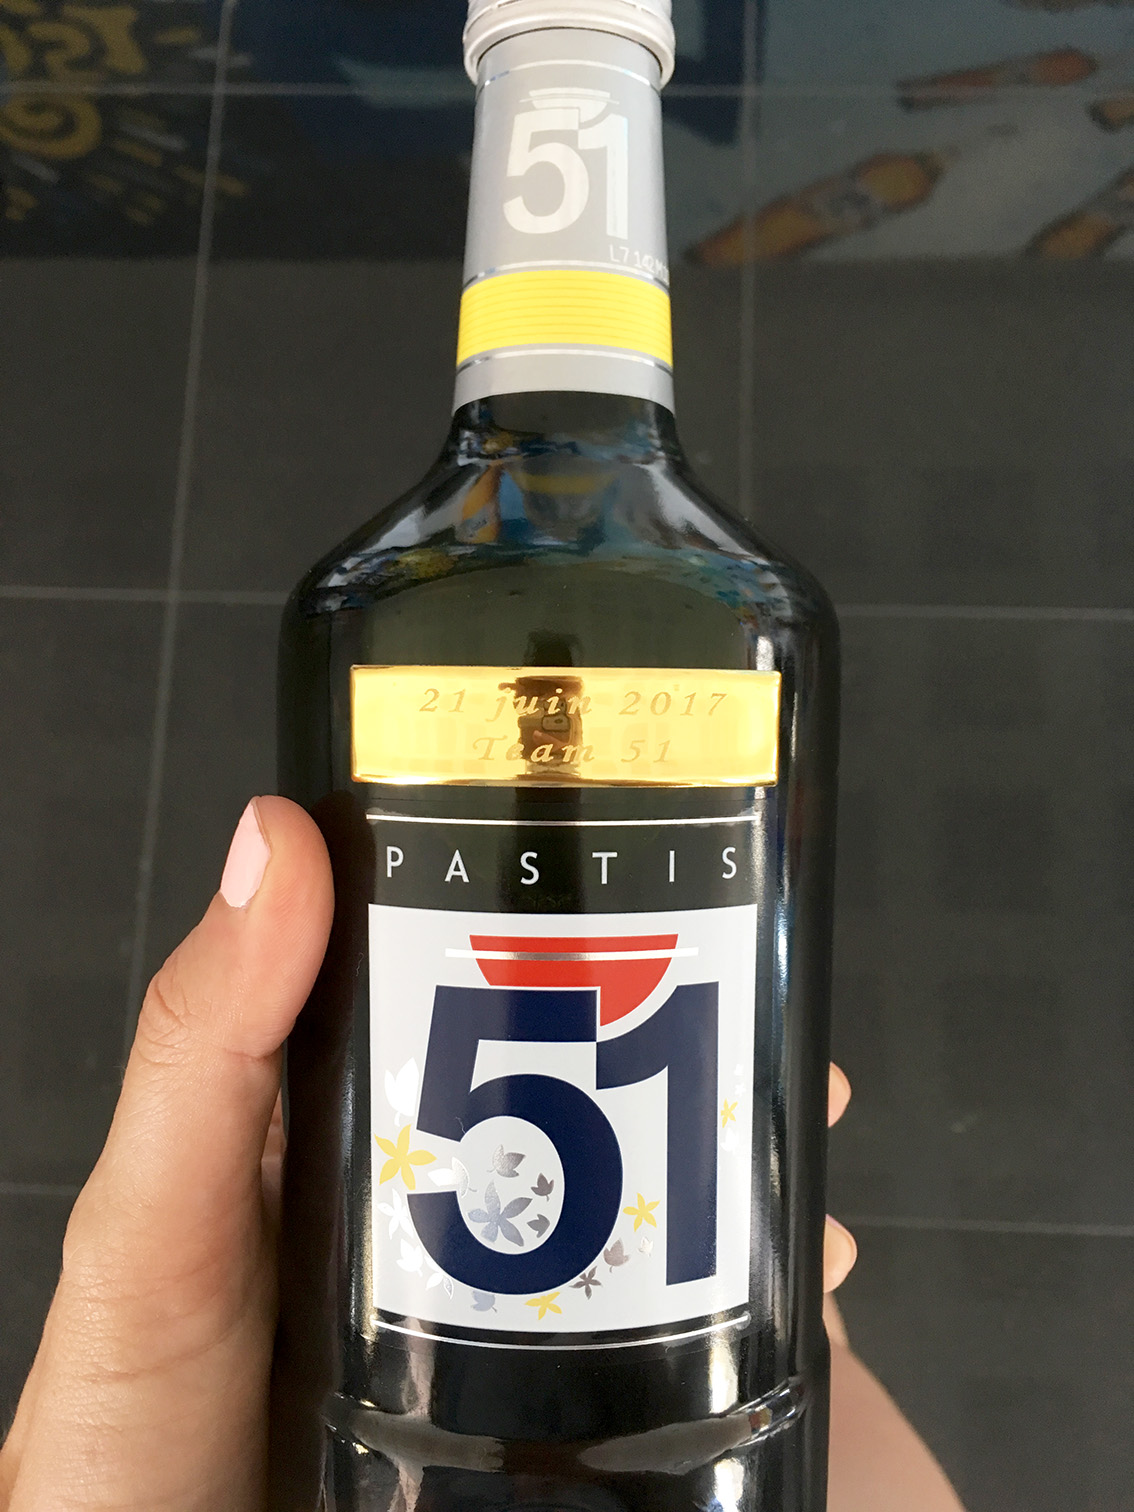 bouteille-personnalisée-pastis-51